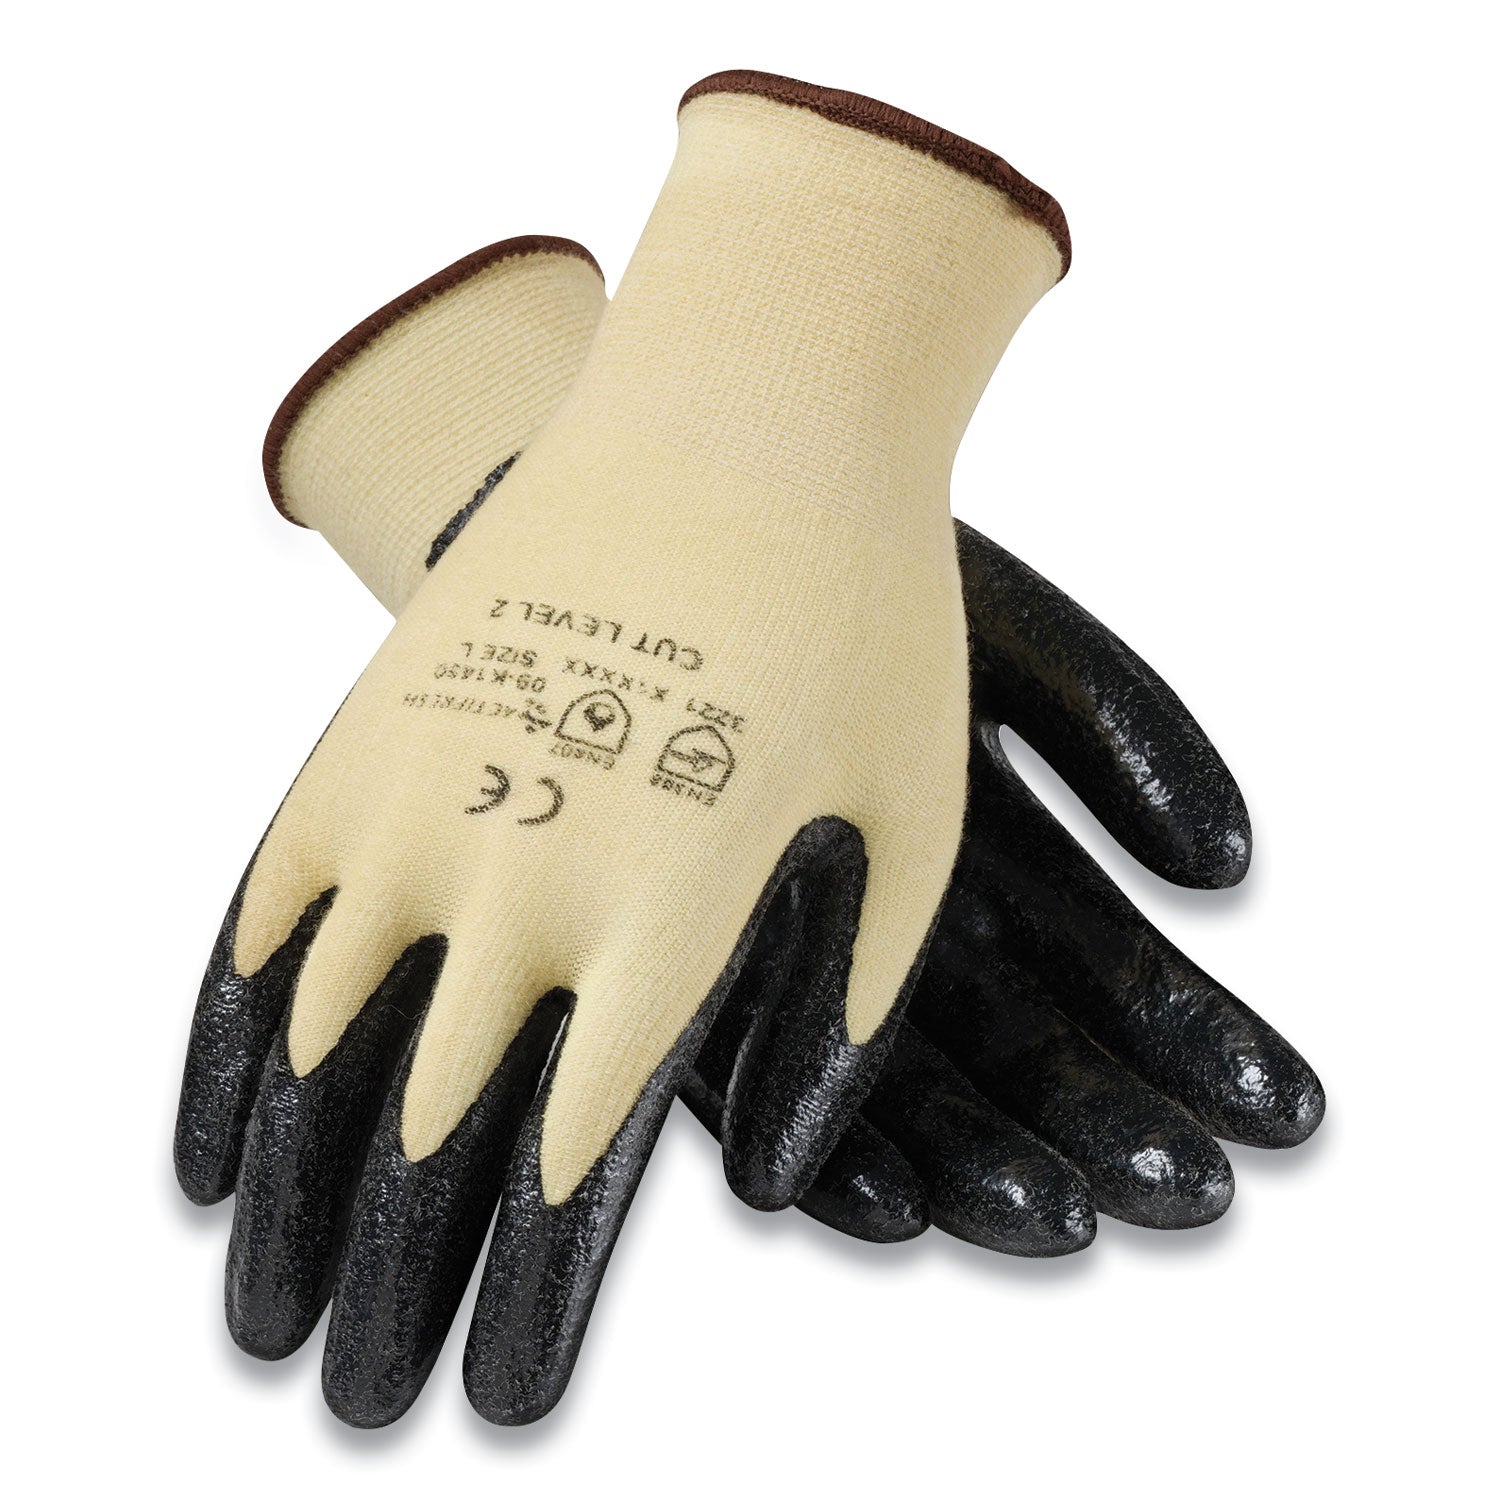 kev-seamless-knit-kevlar-gloves-x-large-yellow-black-12-pairs_pid09k1450xl - 1